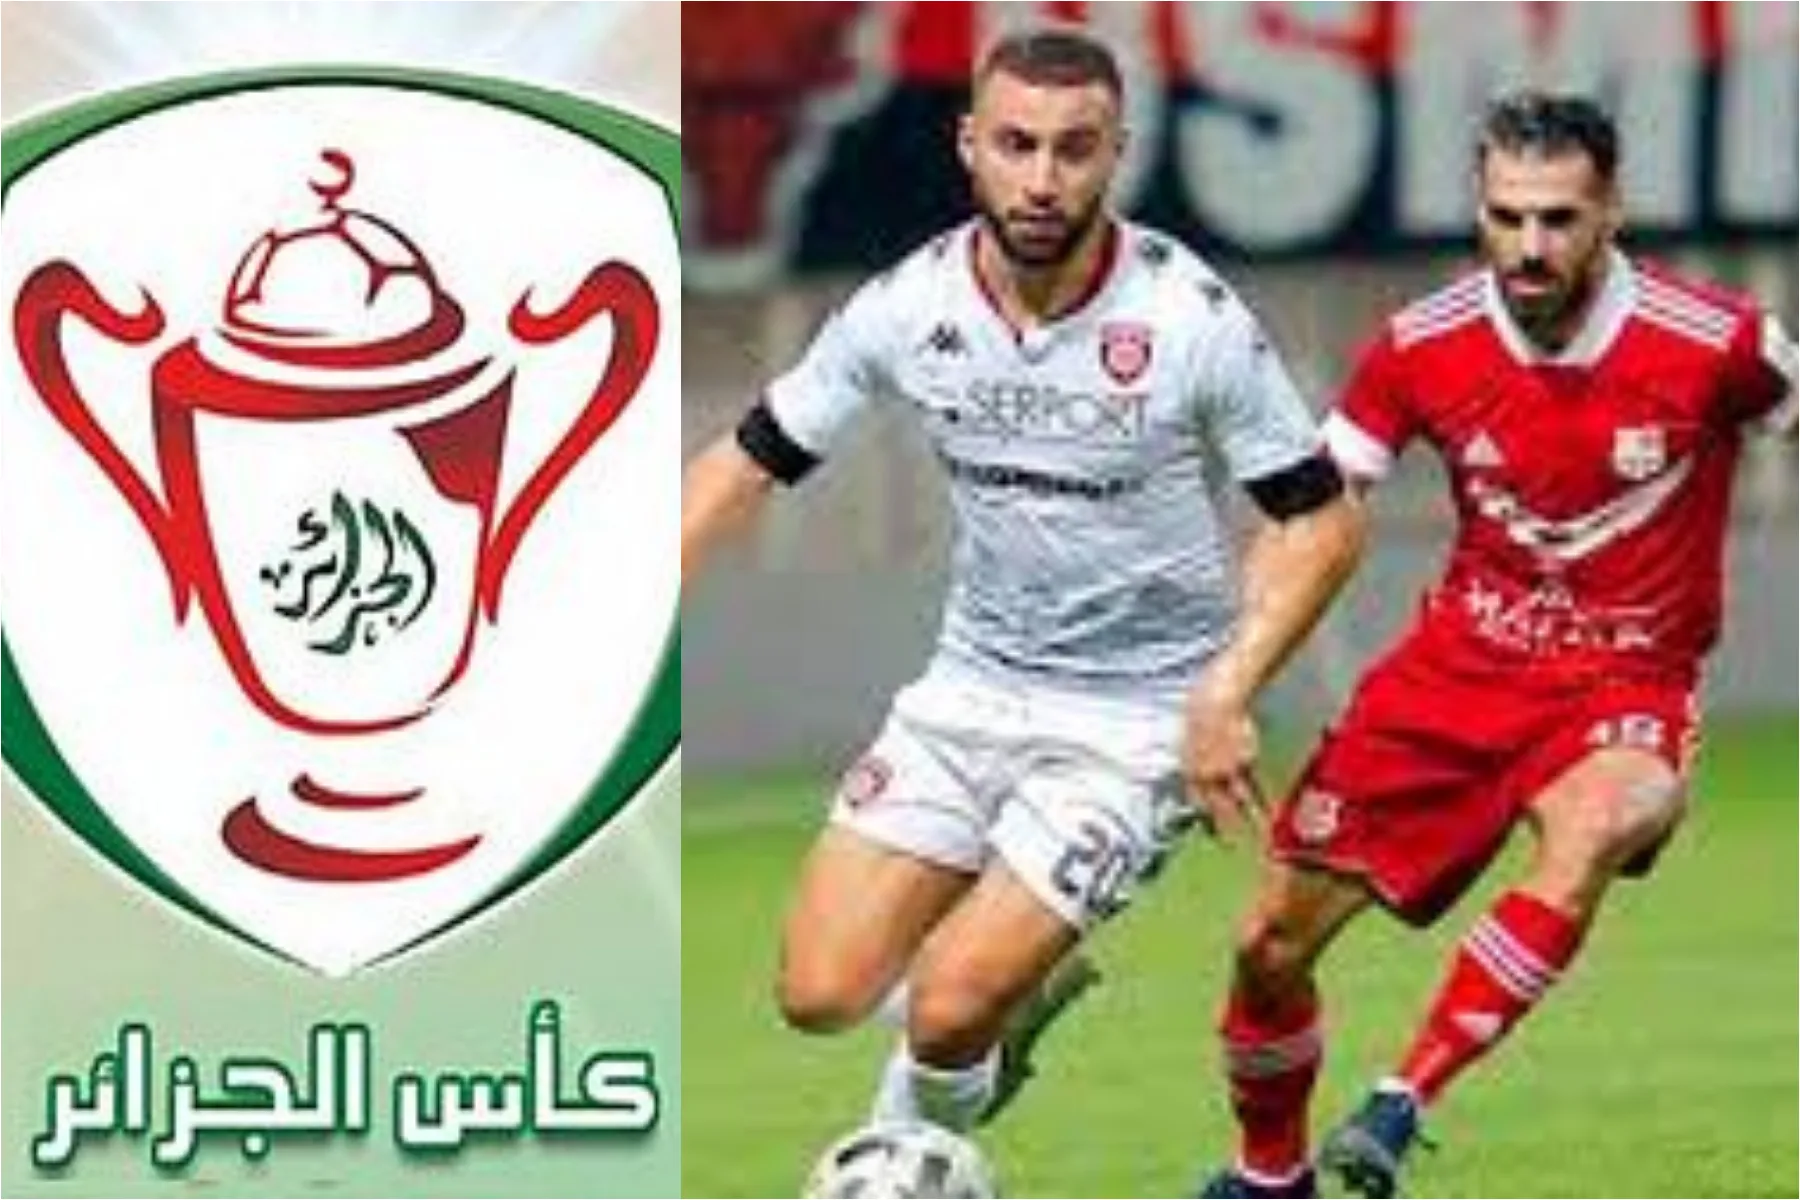   كأس الجزائر: شباب بلوزداد يواجه اتحاد العاصمة 